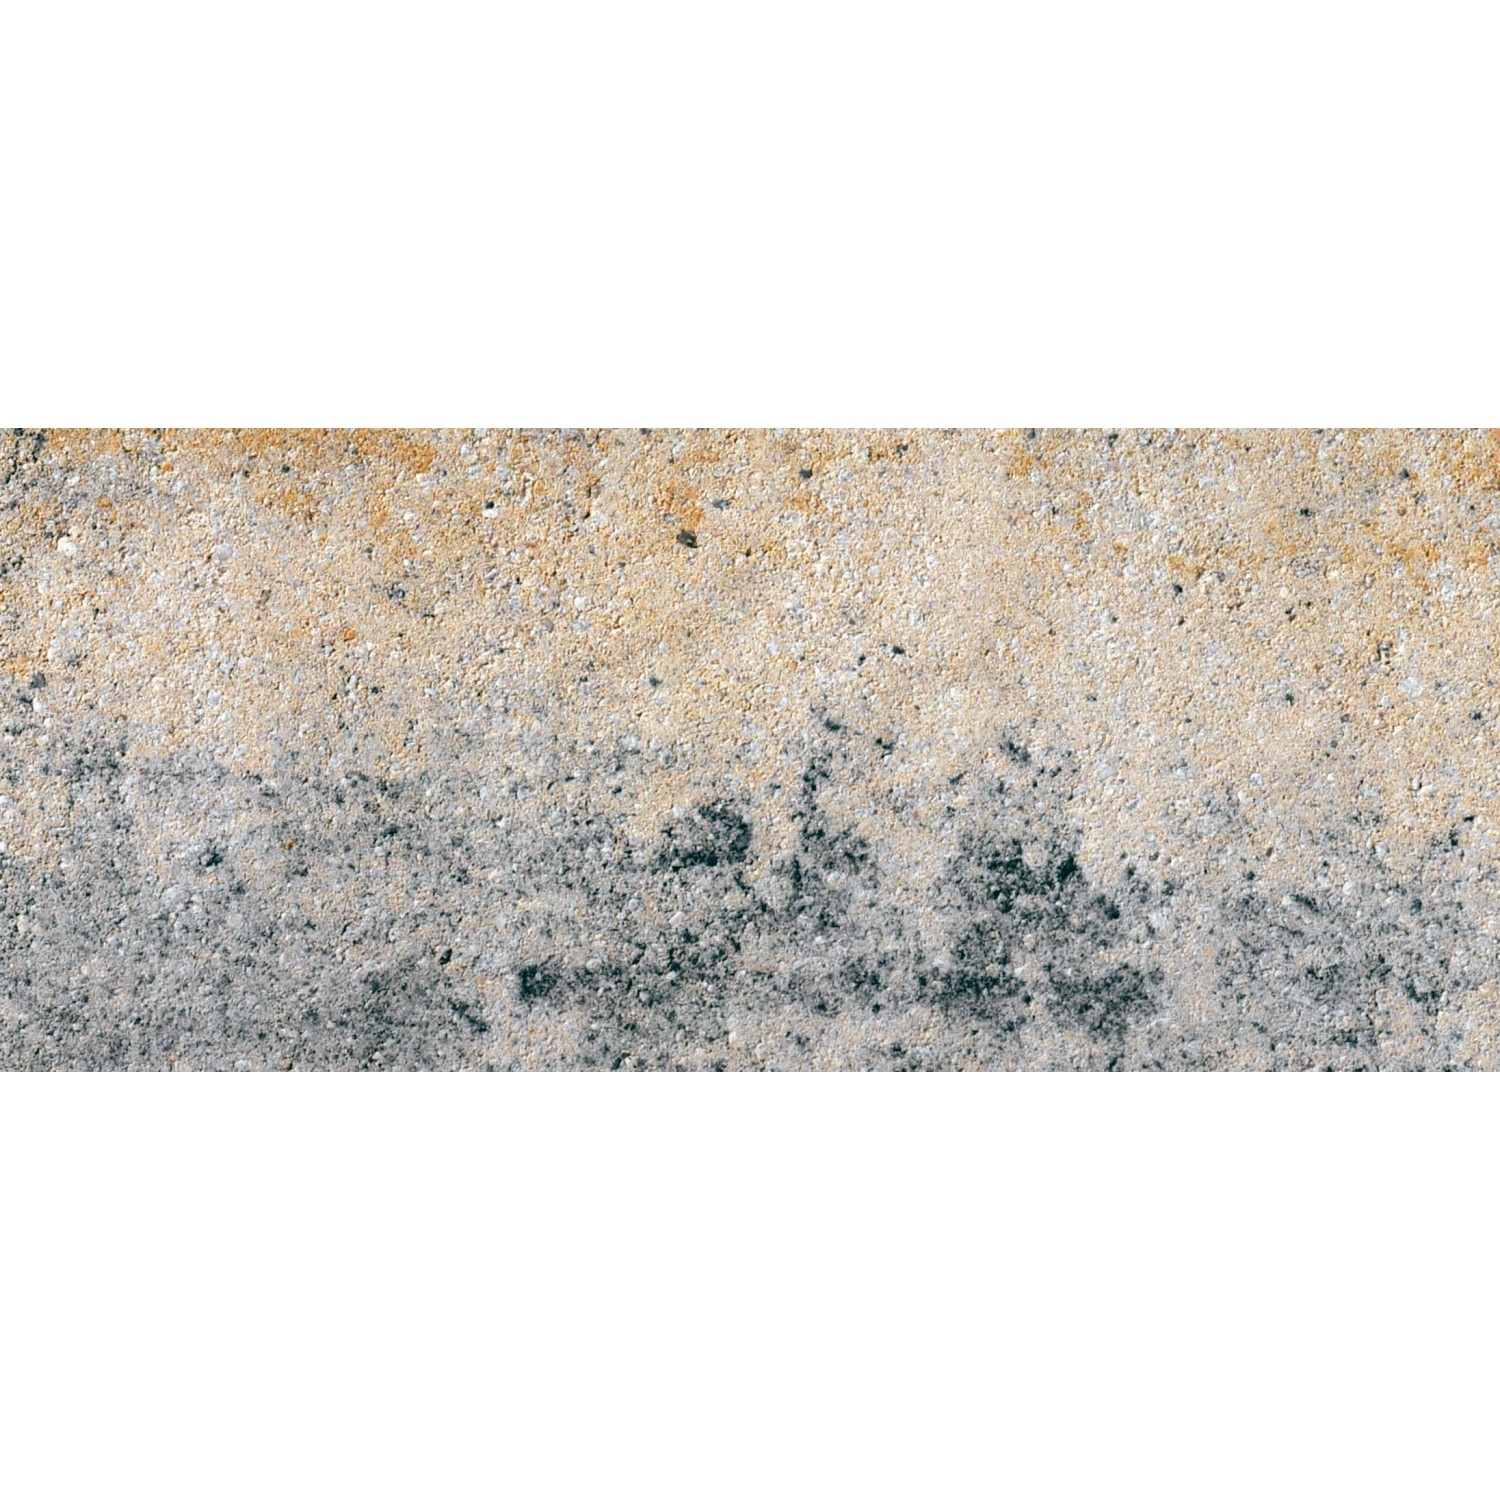 Diephaus Terrassenplatte Langas Muschelkalk 80 x 20 x 6 cm PE3